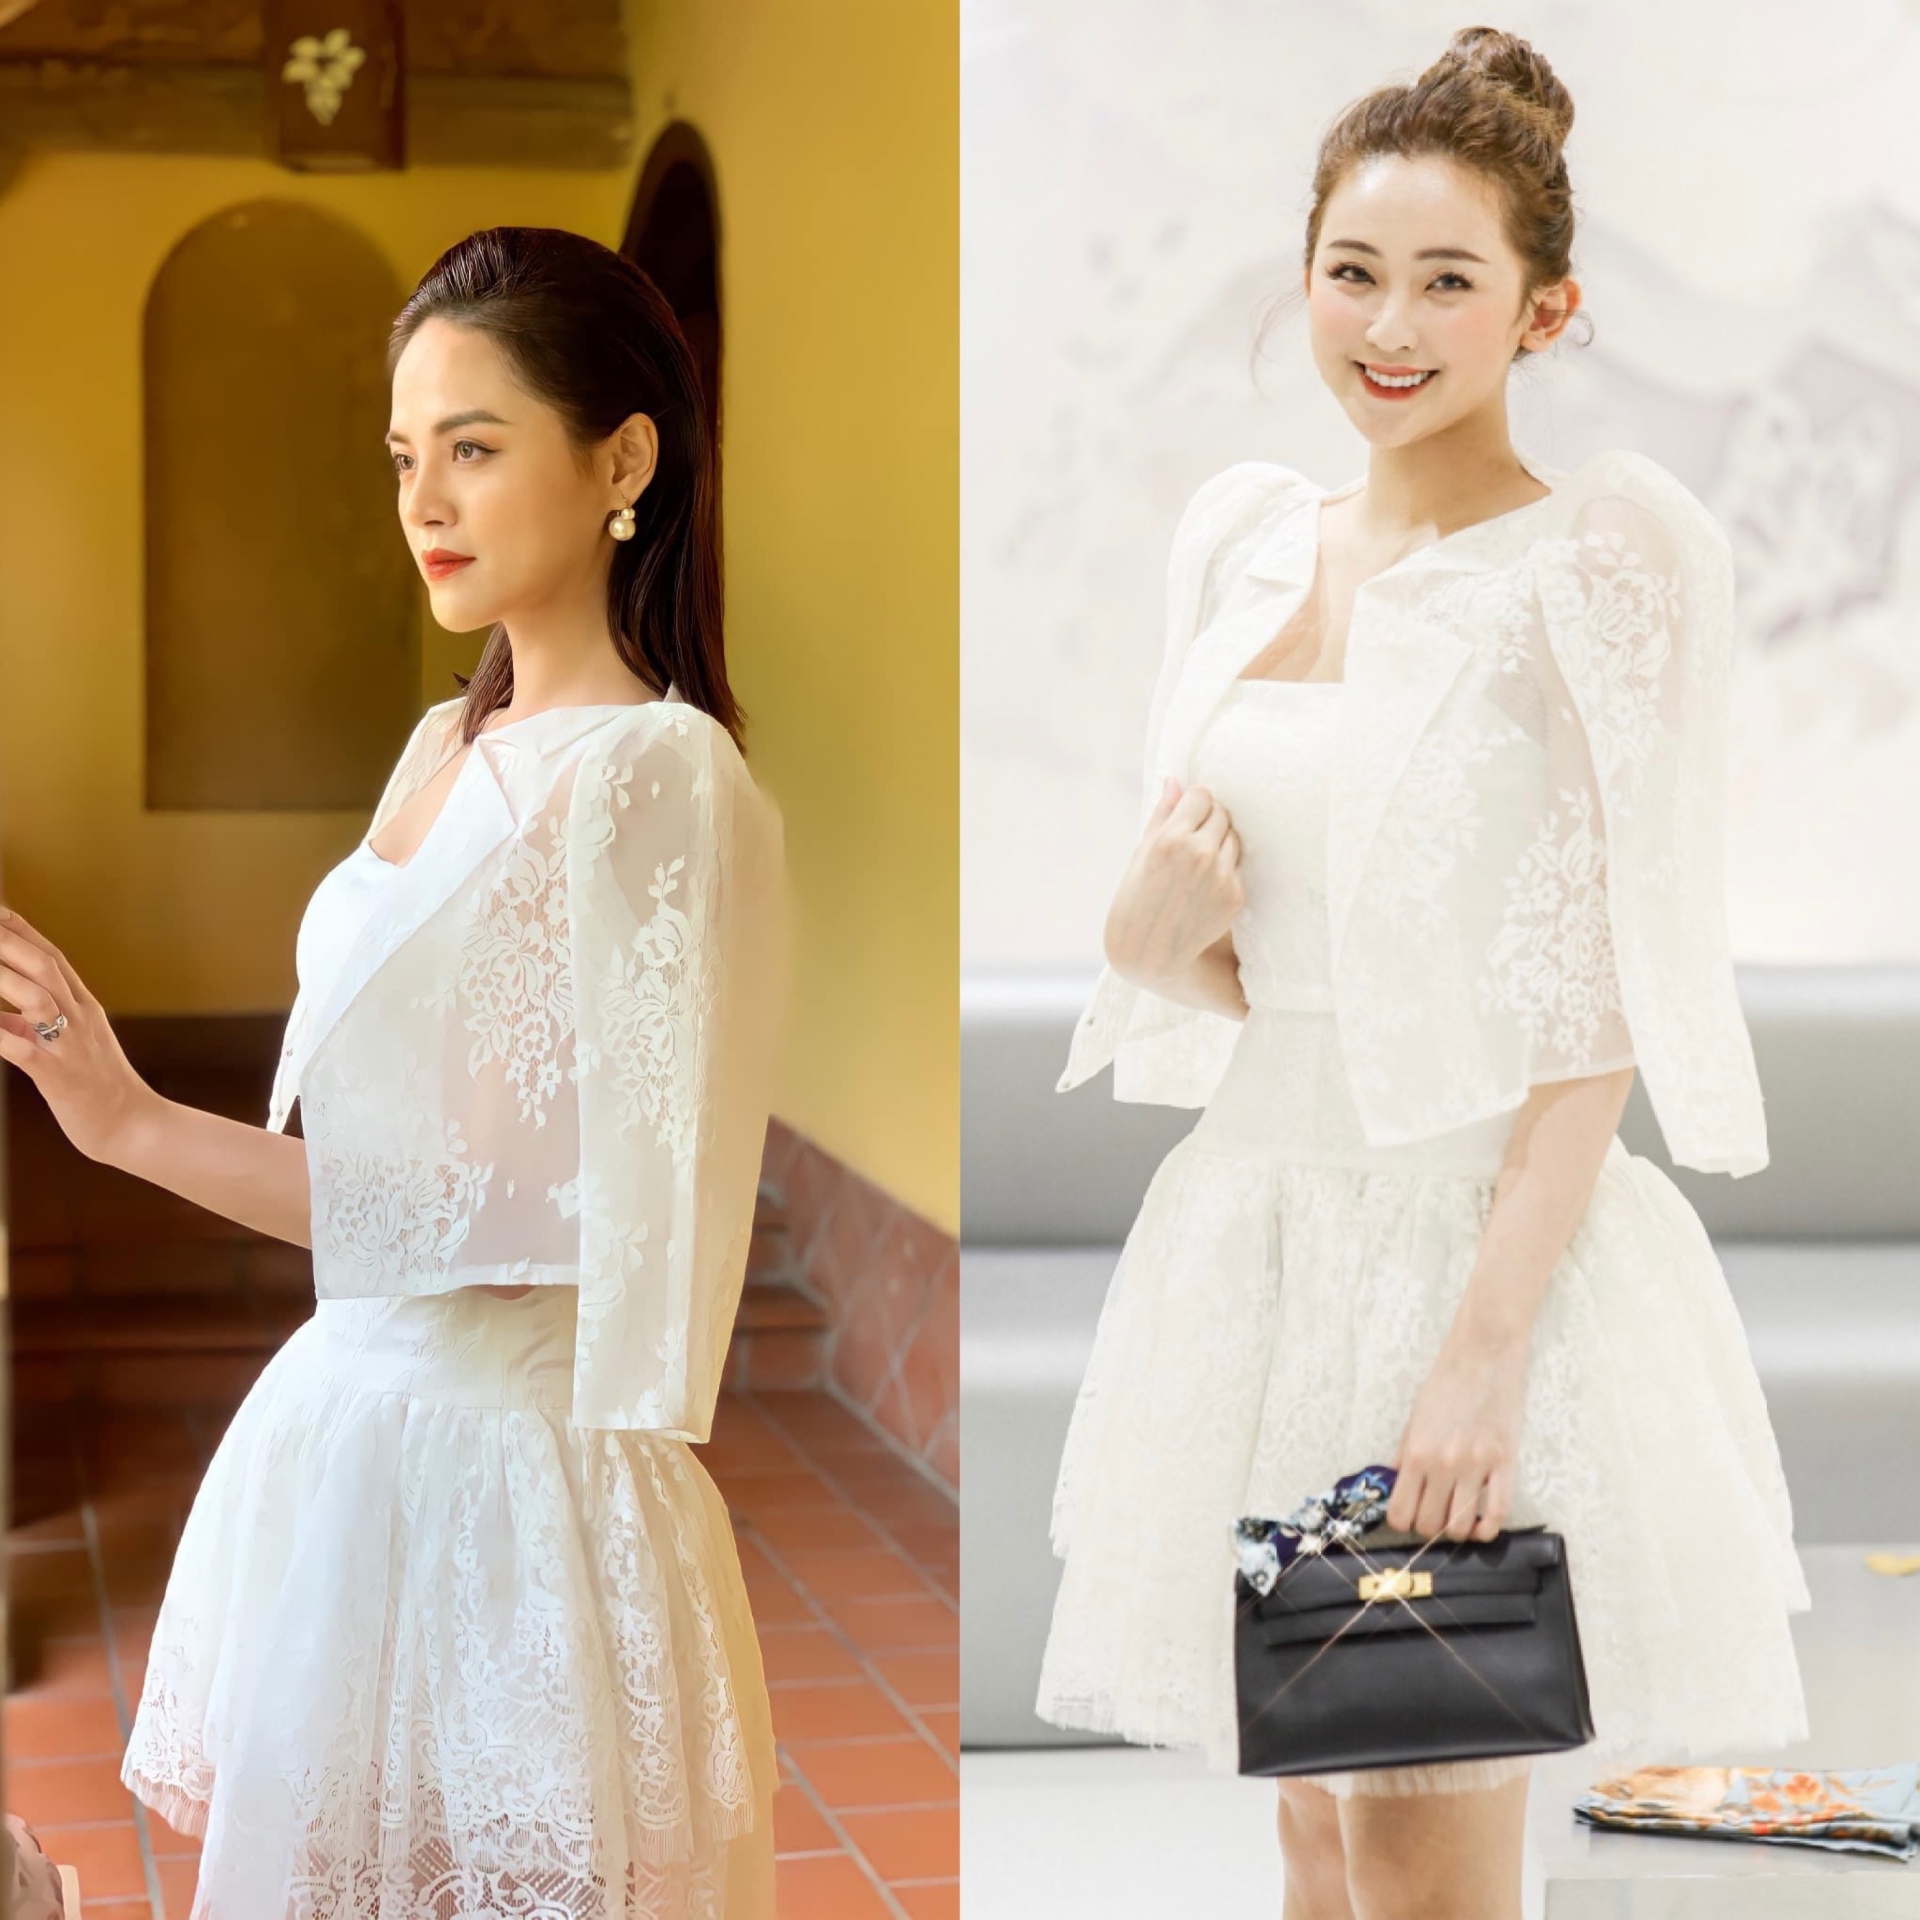 Khán giả còn cho rằng bộ váy của Thy xứng đáng chiếm trọn spotlight của buổi lễ hơn là chiếc váy cưới của Nam. Đây là một thiết kế của thương hiệu nổi tiếng She by Hoa Nguyen có giá 10 triệu đồng, 'chát' hơn so với những item khác.